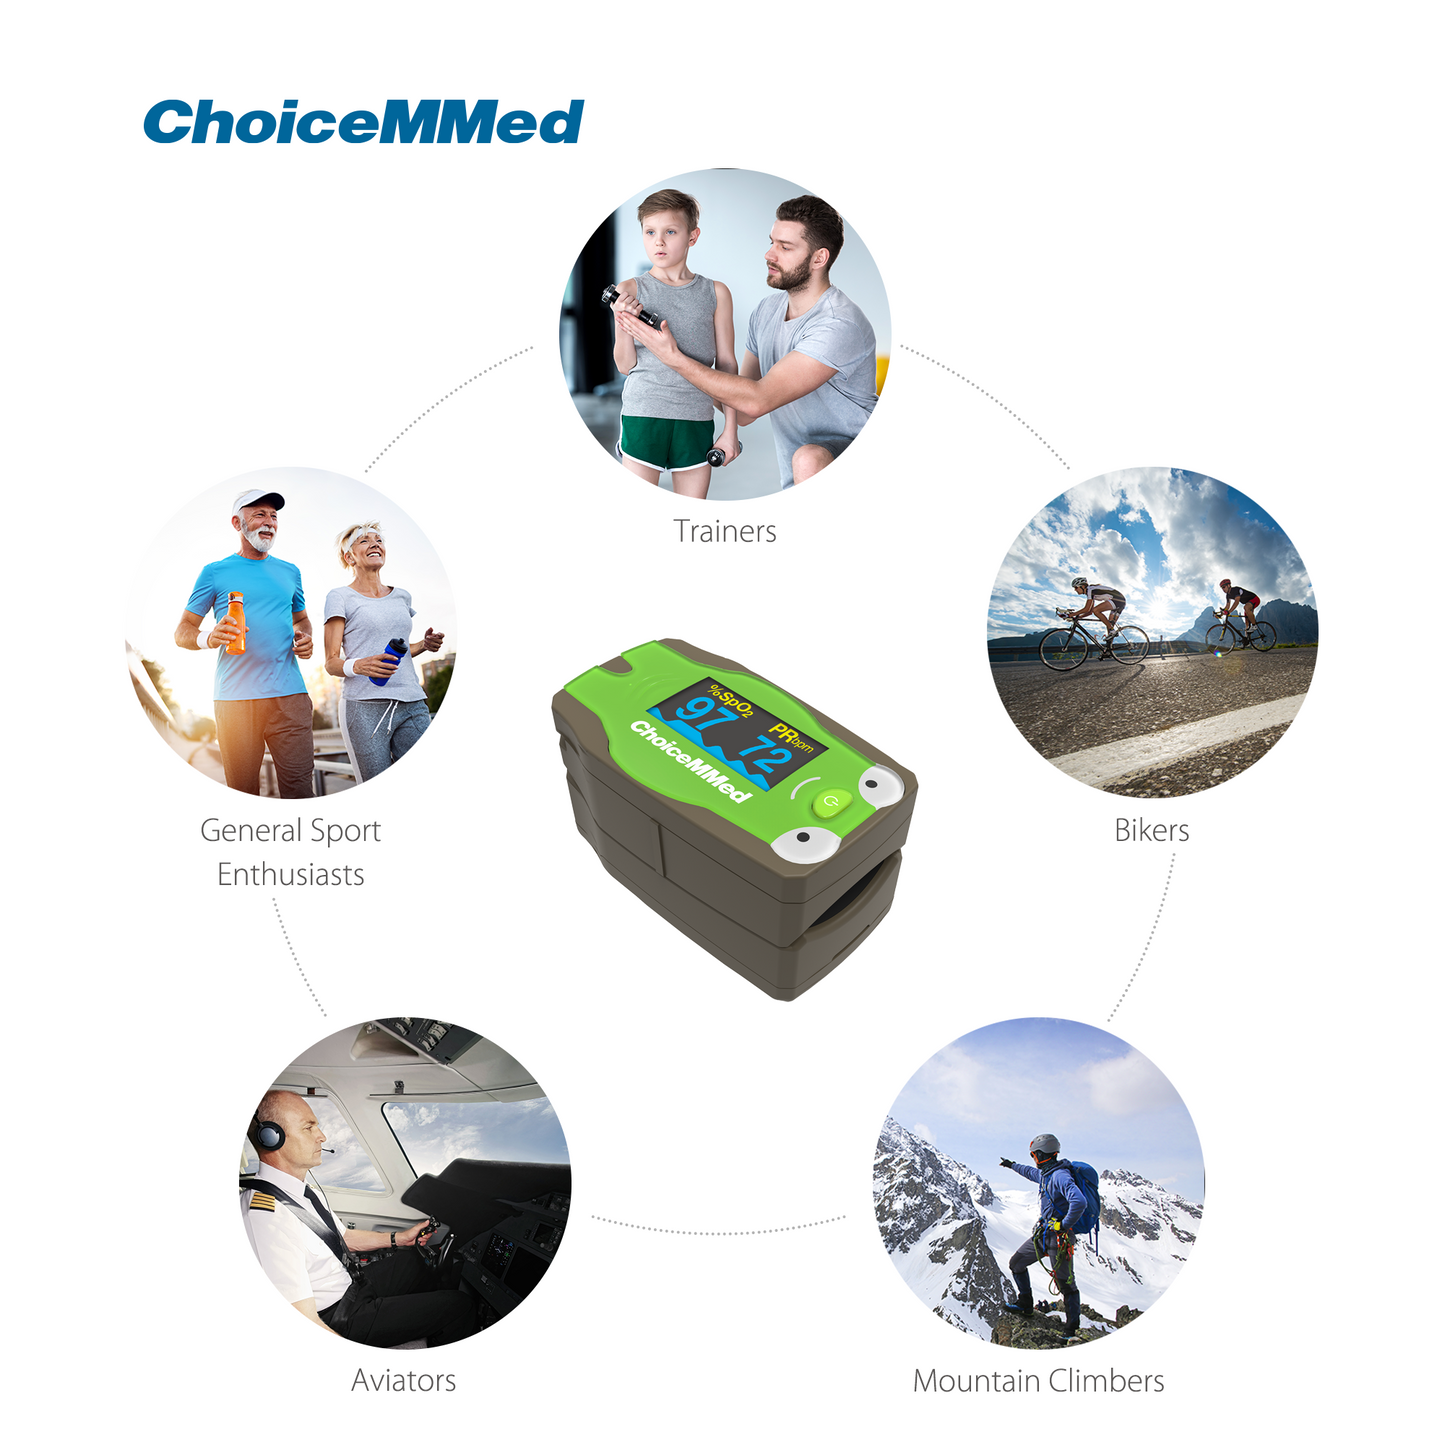 ChoiceMMed MD300C53 Children Pediatric (Kids) Fingertip Pulse Oximeter for Kids